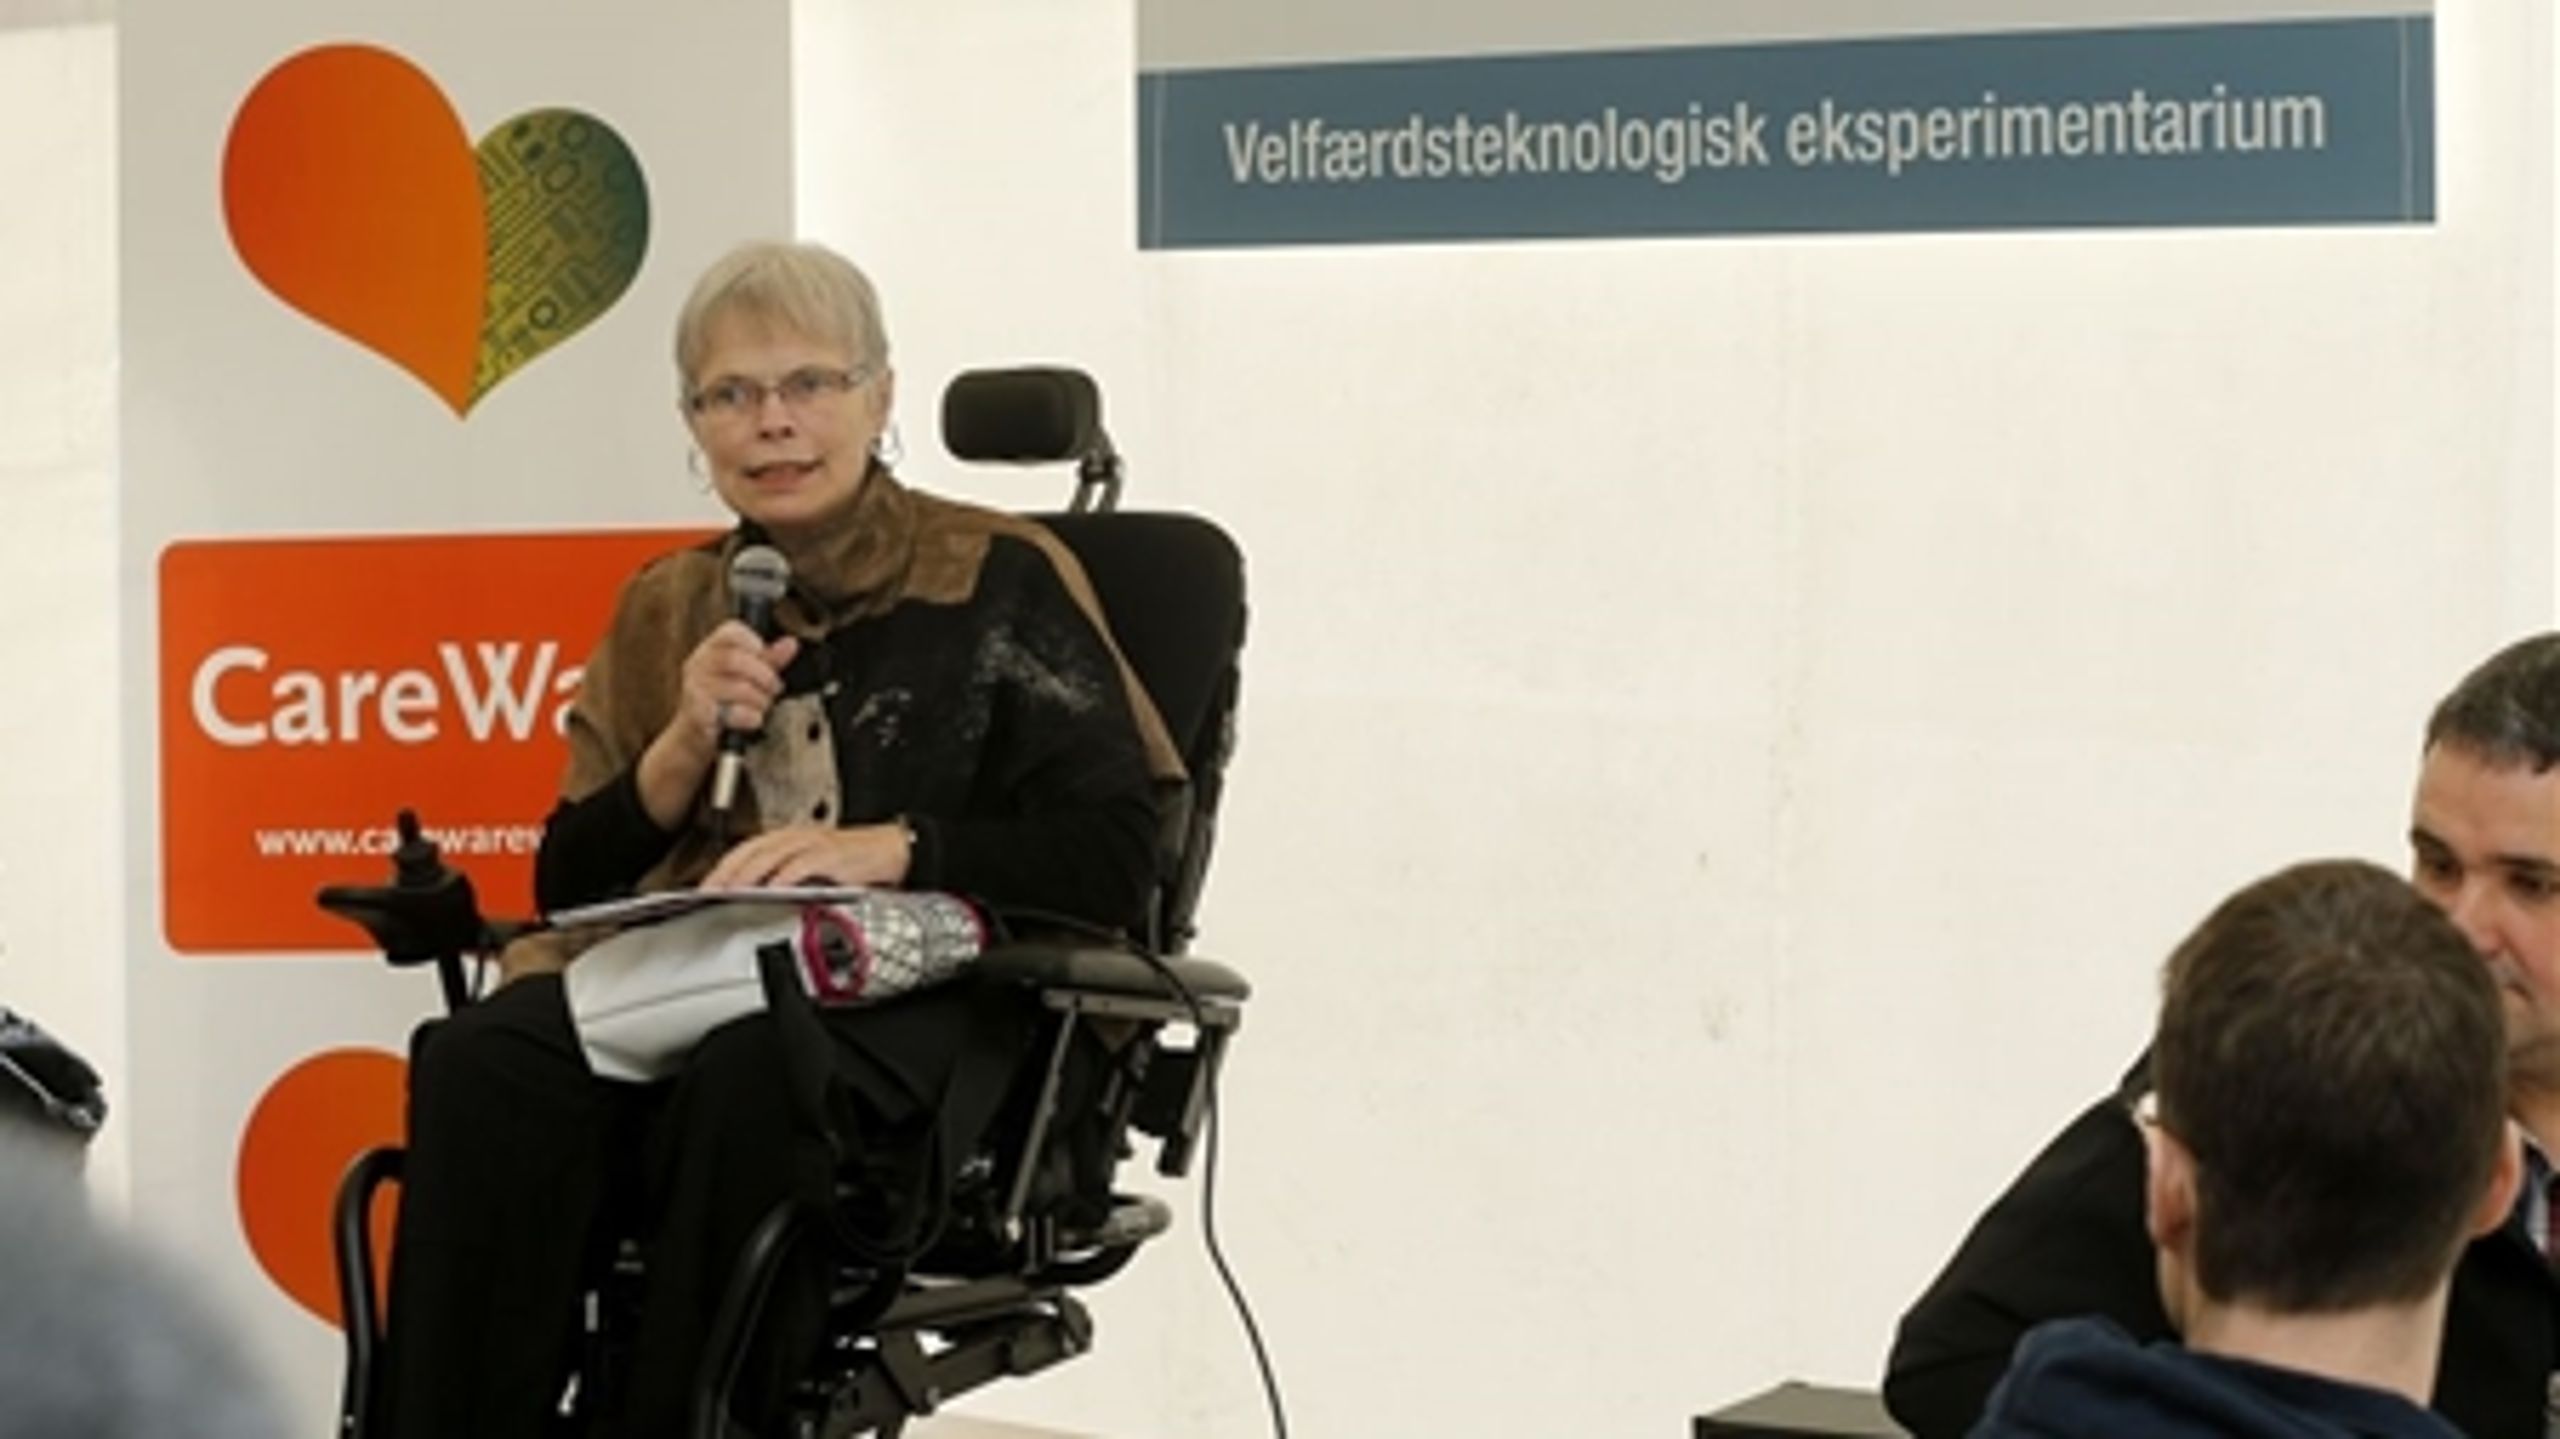 Rådmand i Aarhus Kommune, Dorthe Laustsen, er lam fra brystet og nedefter efter en bilulykke. Det har ændret hendes syn på velfærdsteknologiens muligheder.